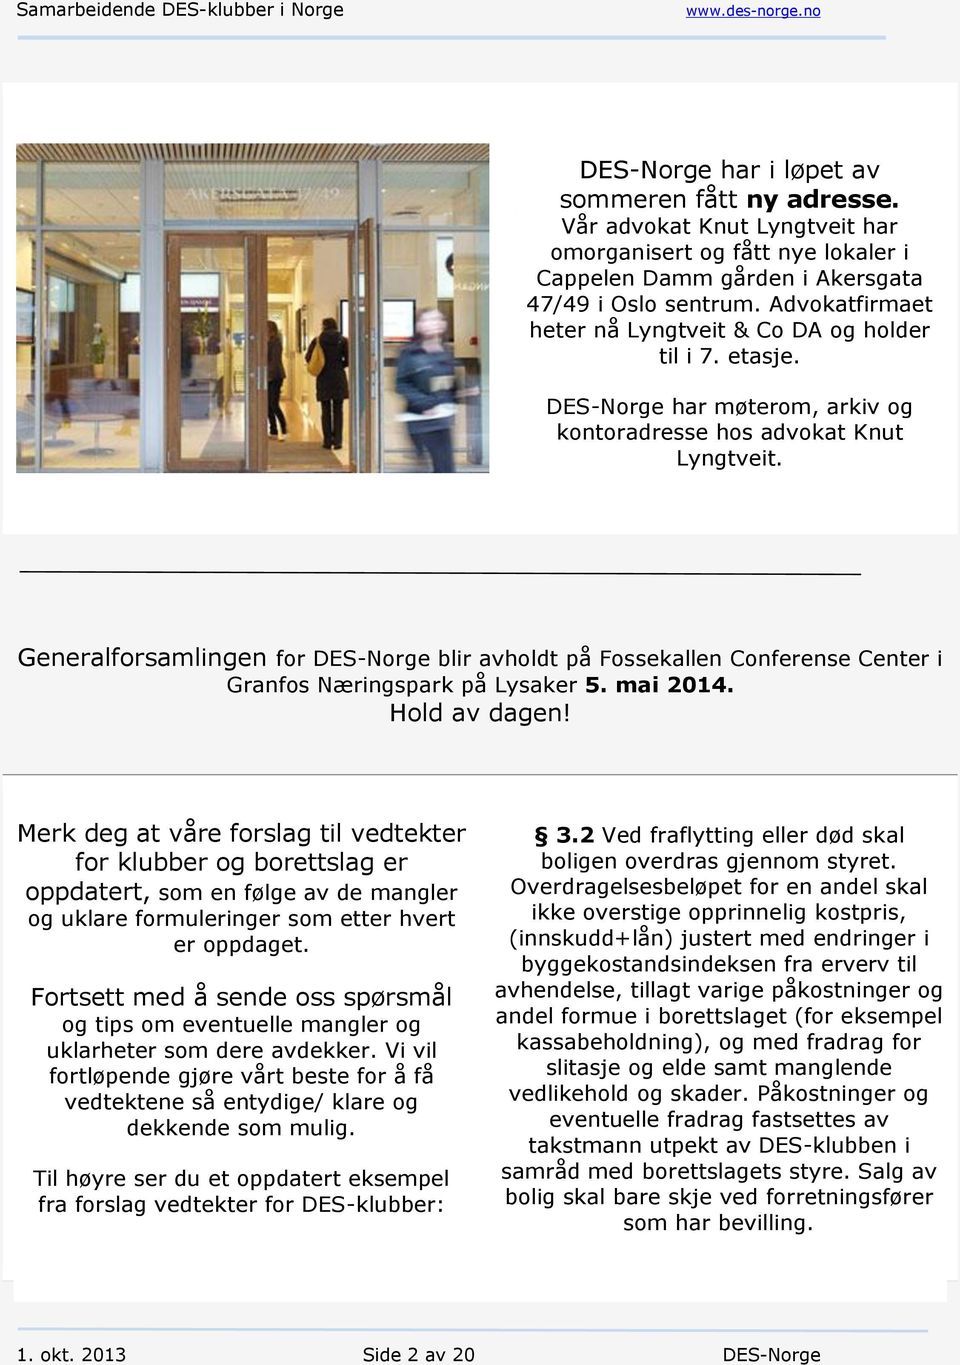 Generalforsamlingen for DES-Norge blir avholdt på Fossekallen Conferense Center i Granfos Næringspark på Lysaker 5. mai 2014. Hold av dagen!